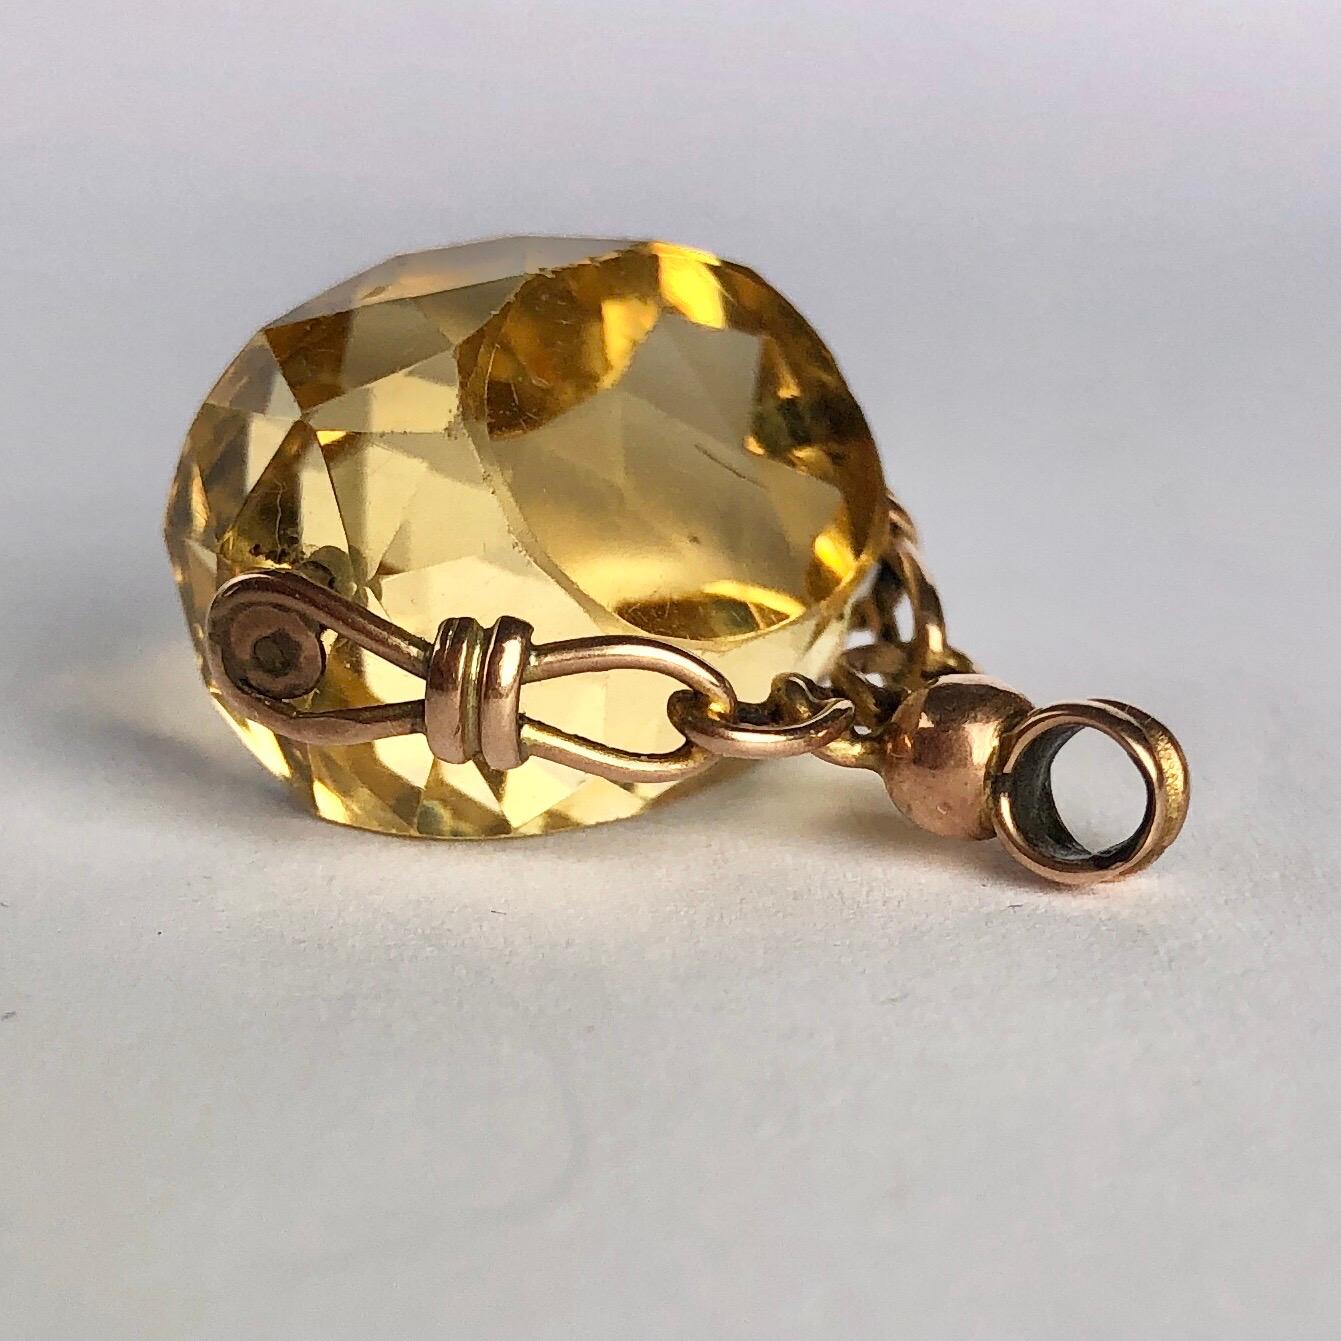 Ce magnifique bracelet pivotant contient une pierre de citrine jaune. Le cadre et la boucle sont en or 9ct et comportent des détails de chaîne. 

Largeur de la pierre : 19 mm
Hauteur, boucle comprise : 26 mm

Poids : 7,3 g 